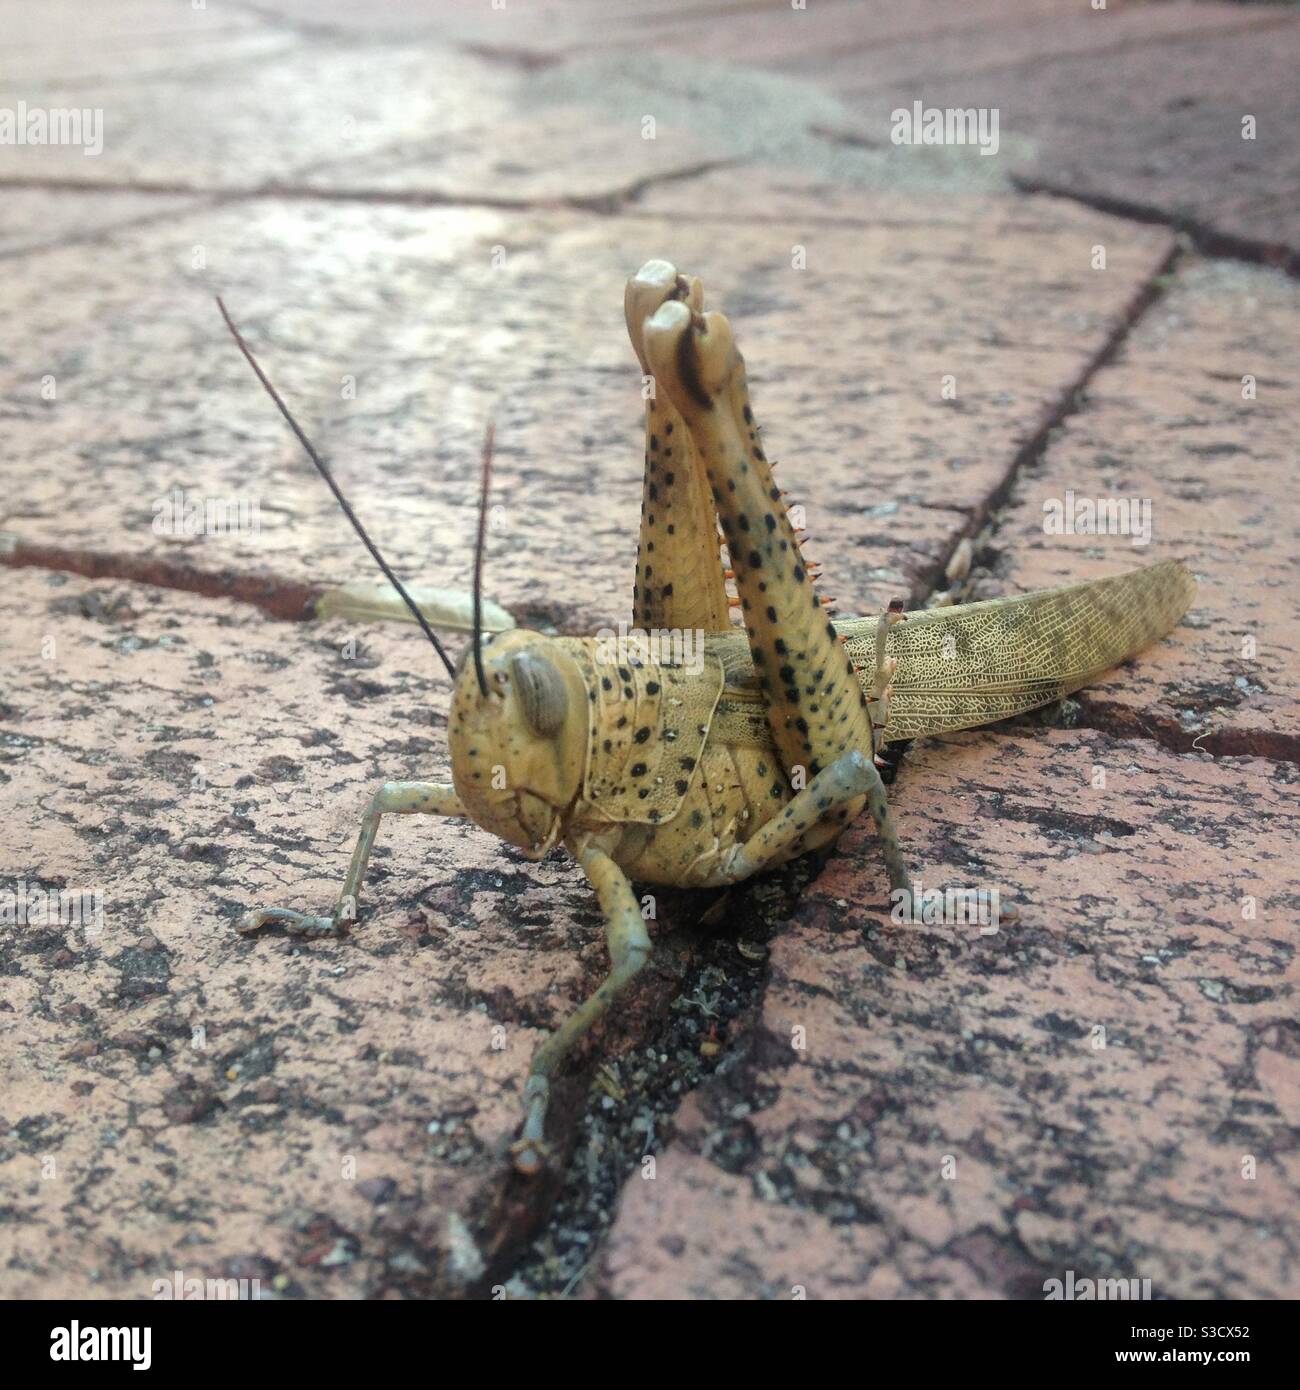 Giant grasshopper, Australia Stock Photo